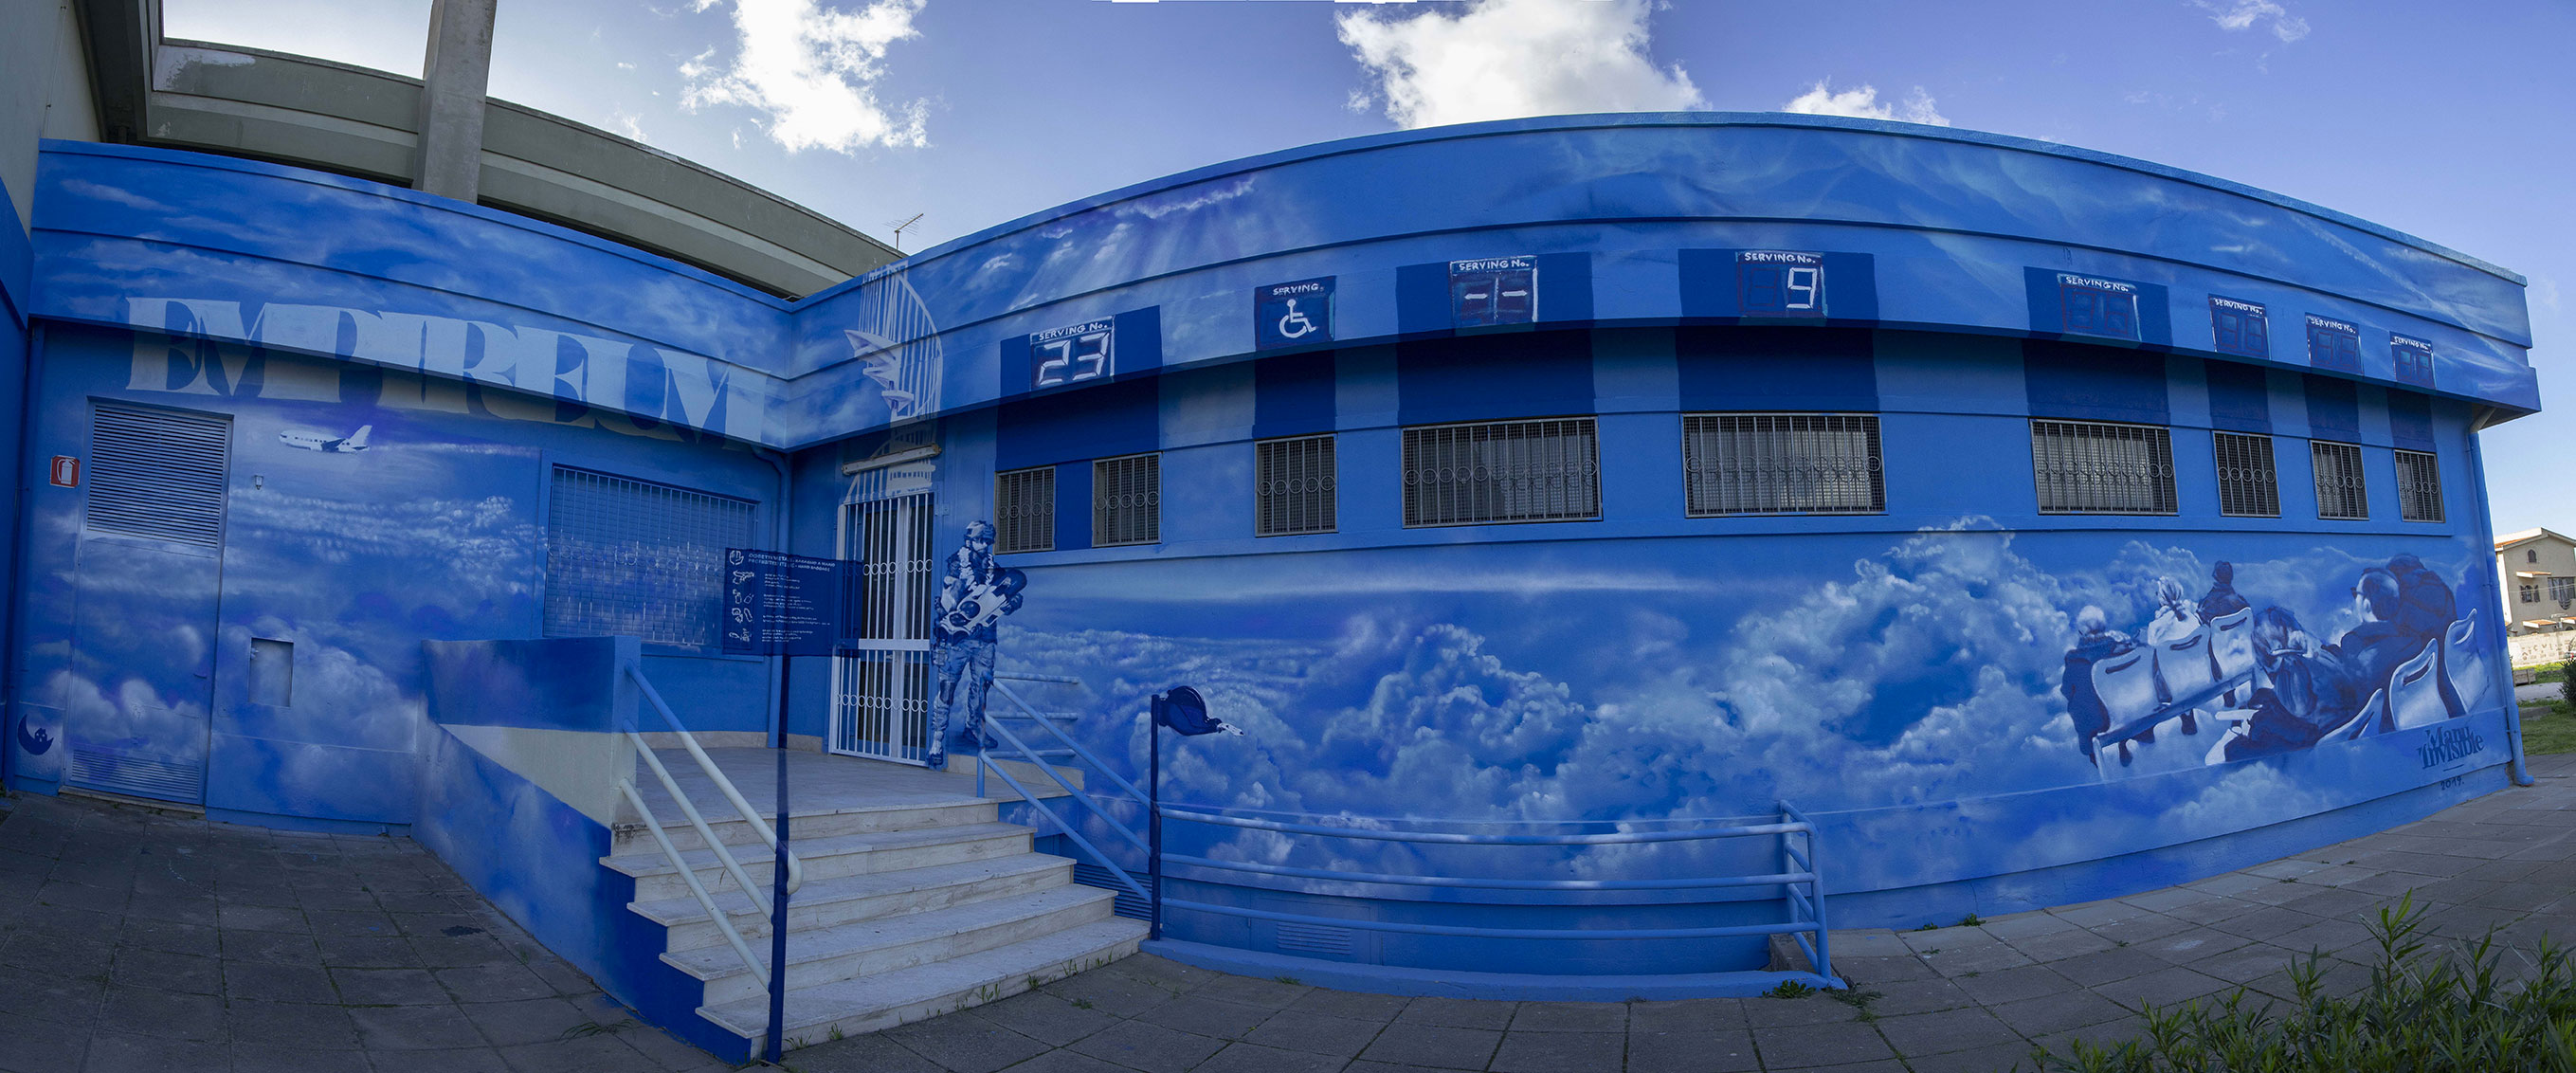 ''EMPIREVM'' Spray e pittura al quarzo su muro 130 mq (anamorfismo) Dante Secondary School Pirri [CA] 2019